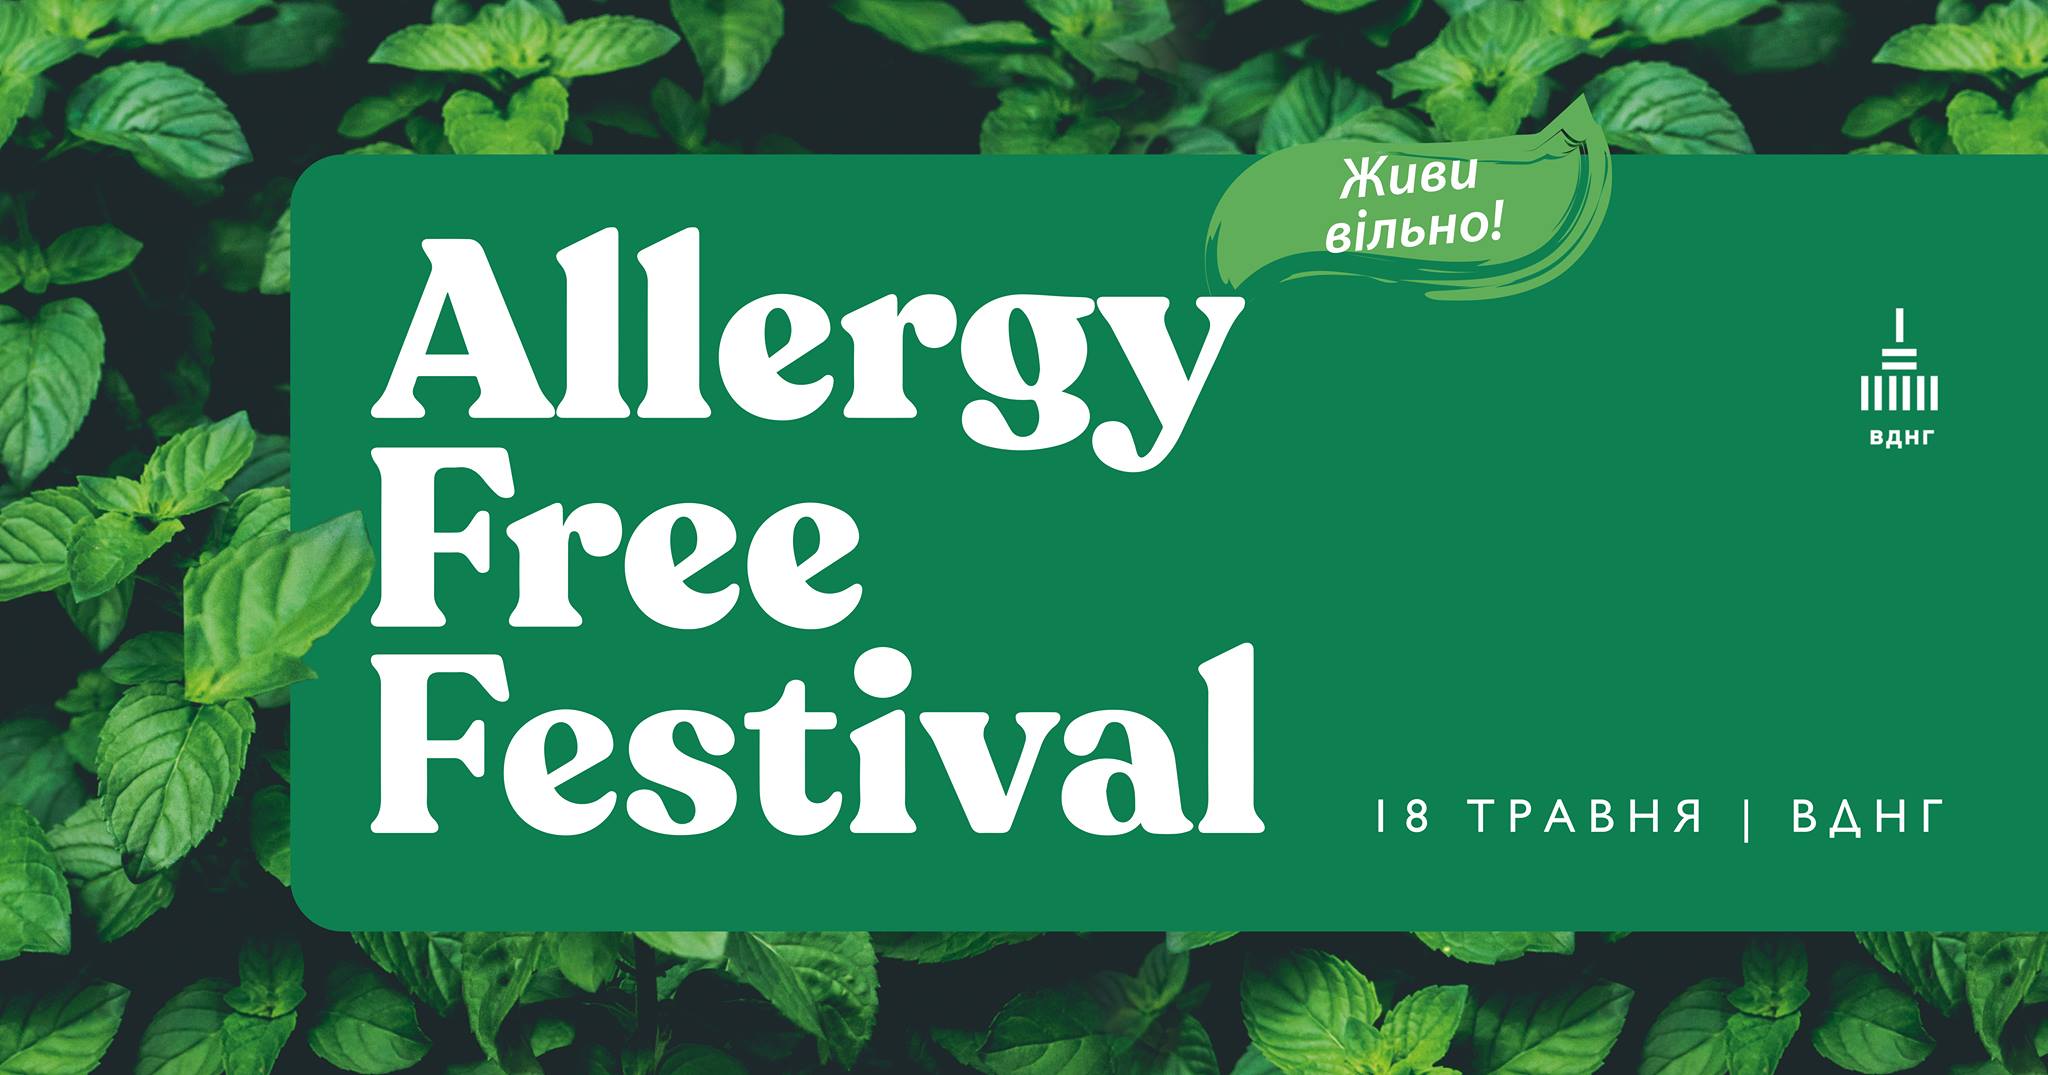 AllergyFreeFestival 1